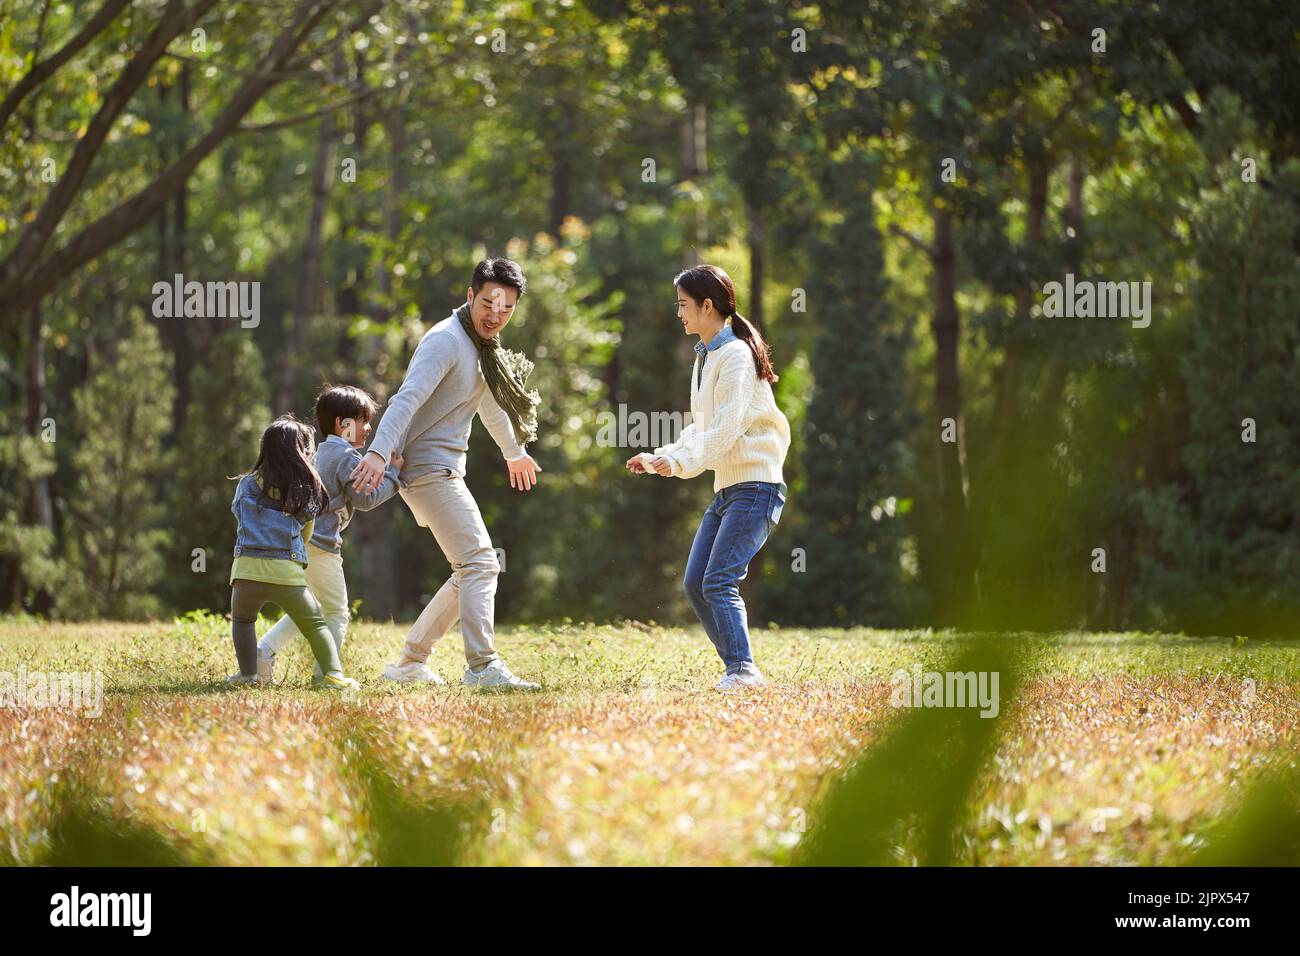 familia asiática joven con dos niños que se divierten jugando en el parque Foto de stock